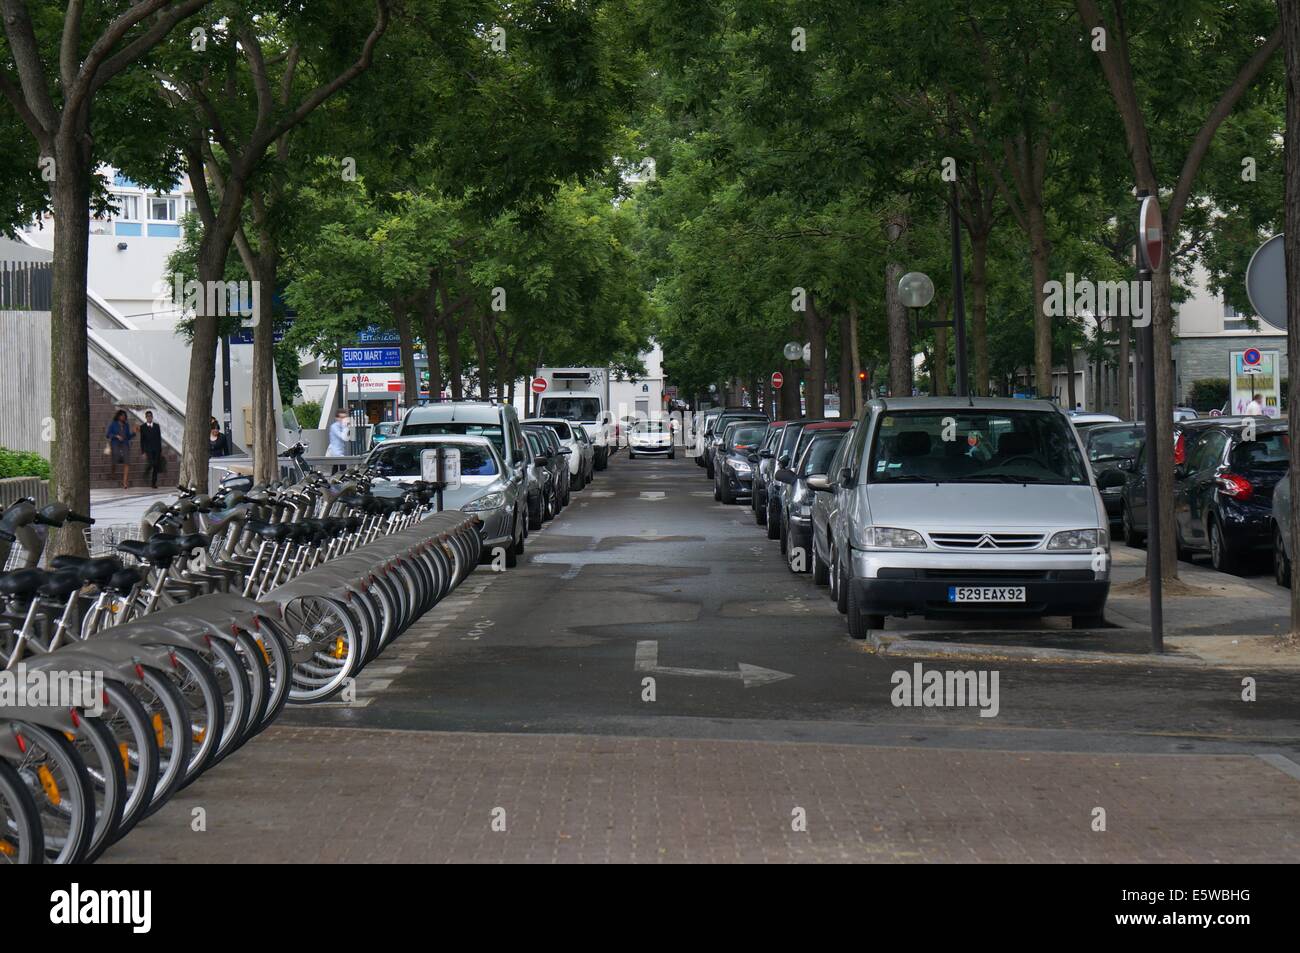 Rue de Paris, une file de voitures en stationnement sur la droite, un rack de vélo sur la gauche Banque D'Images